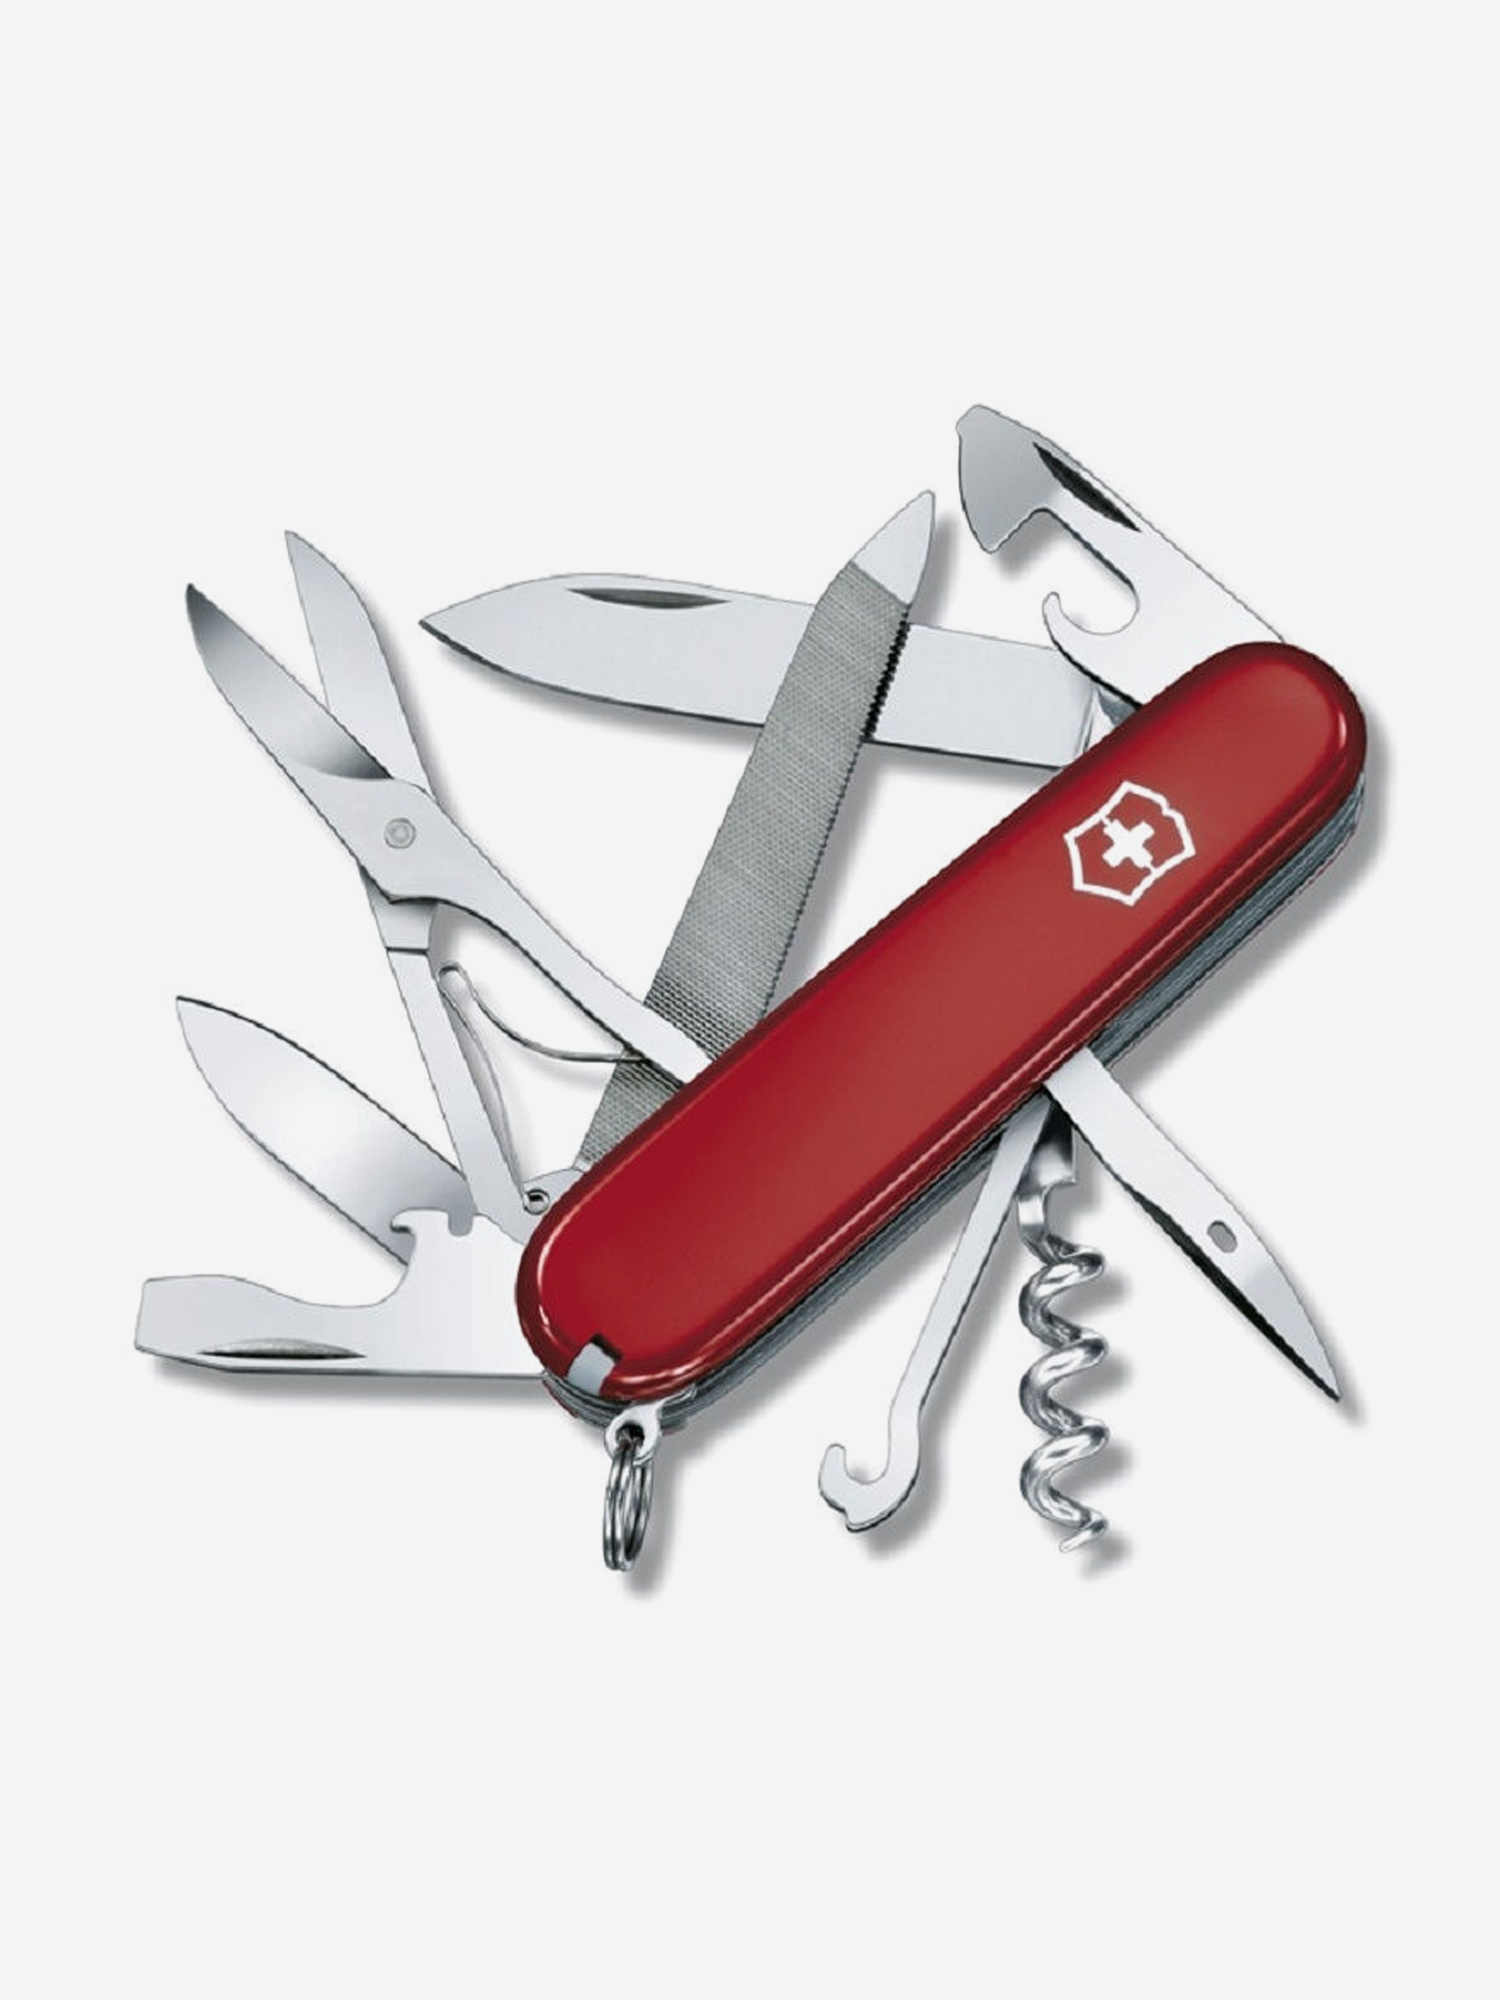 Нож складной Victorinox Mountaineer, 91 мм, 18 функций, Красный нож складной victorinox super tinker 91 мм 14 функций красный